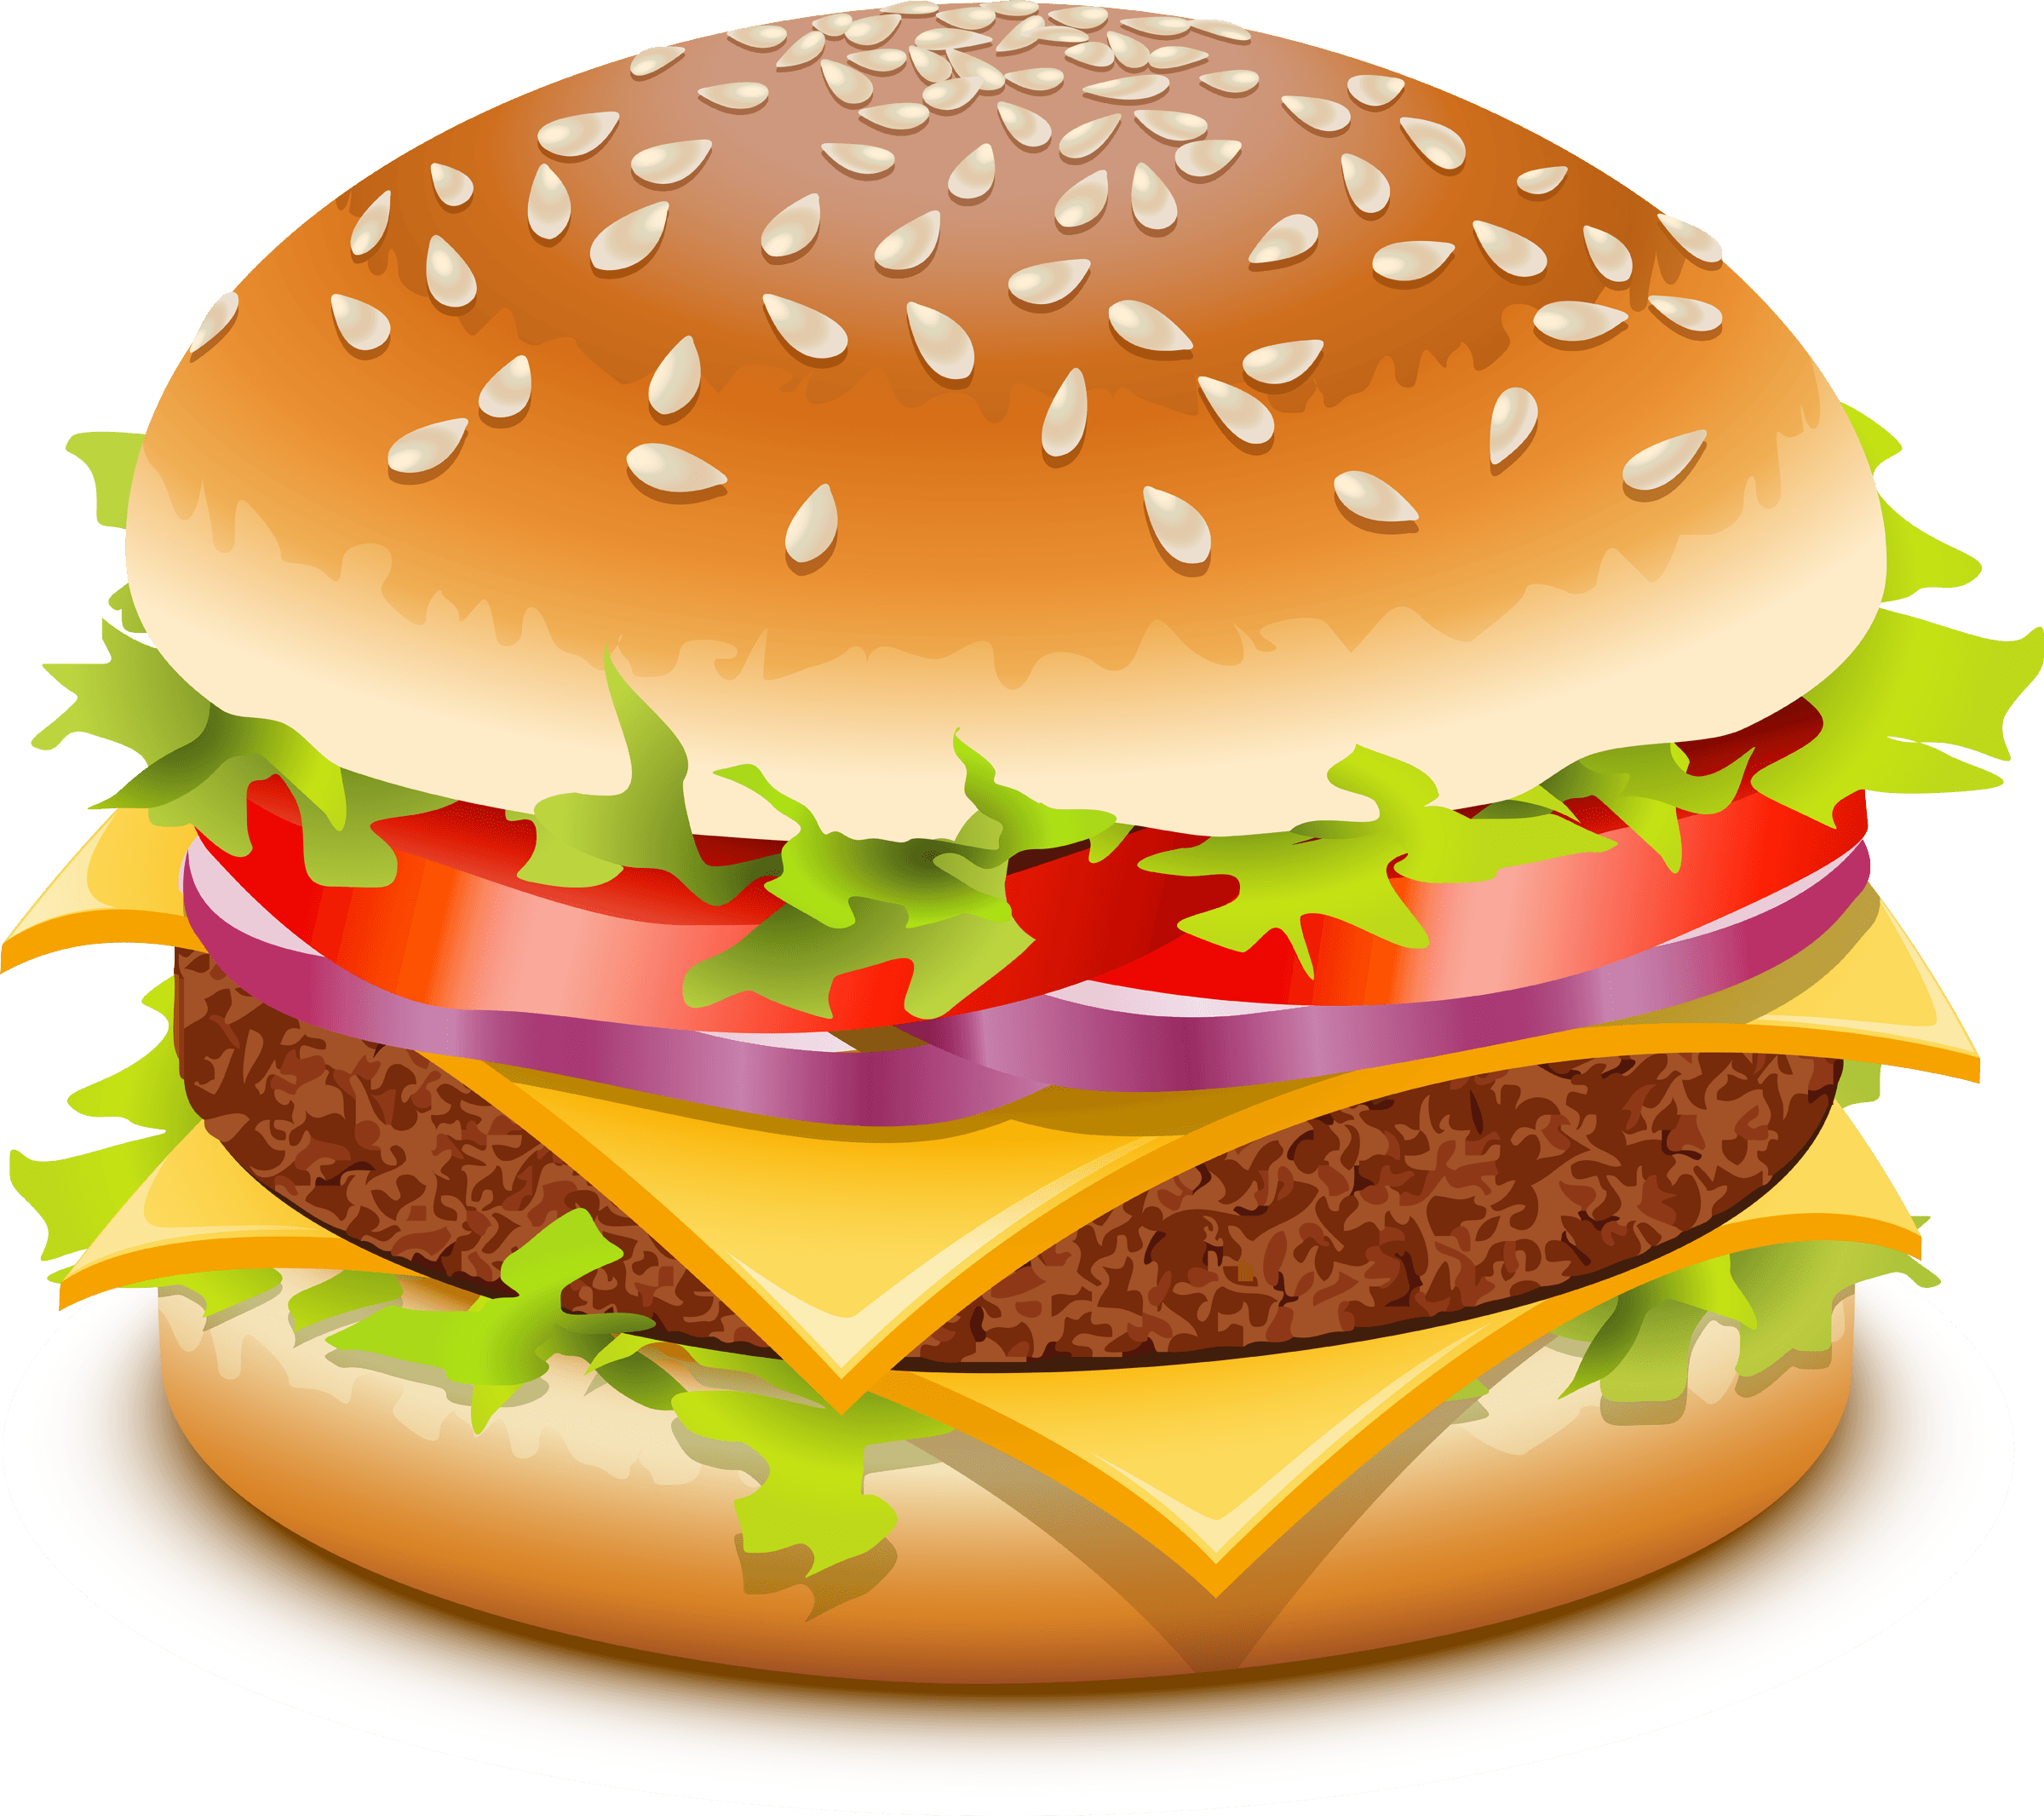 Hamburger Burger Png Image Mac Burger PNG Image